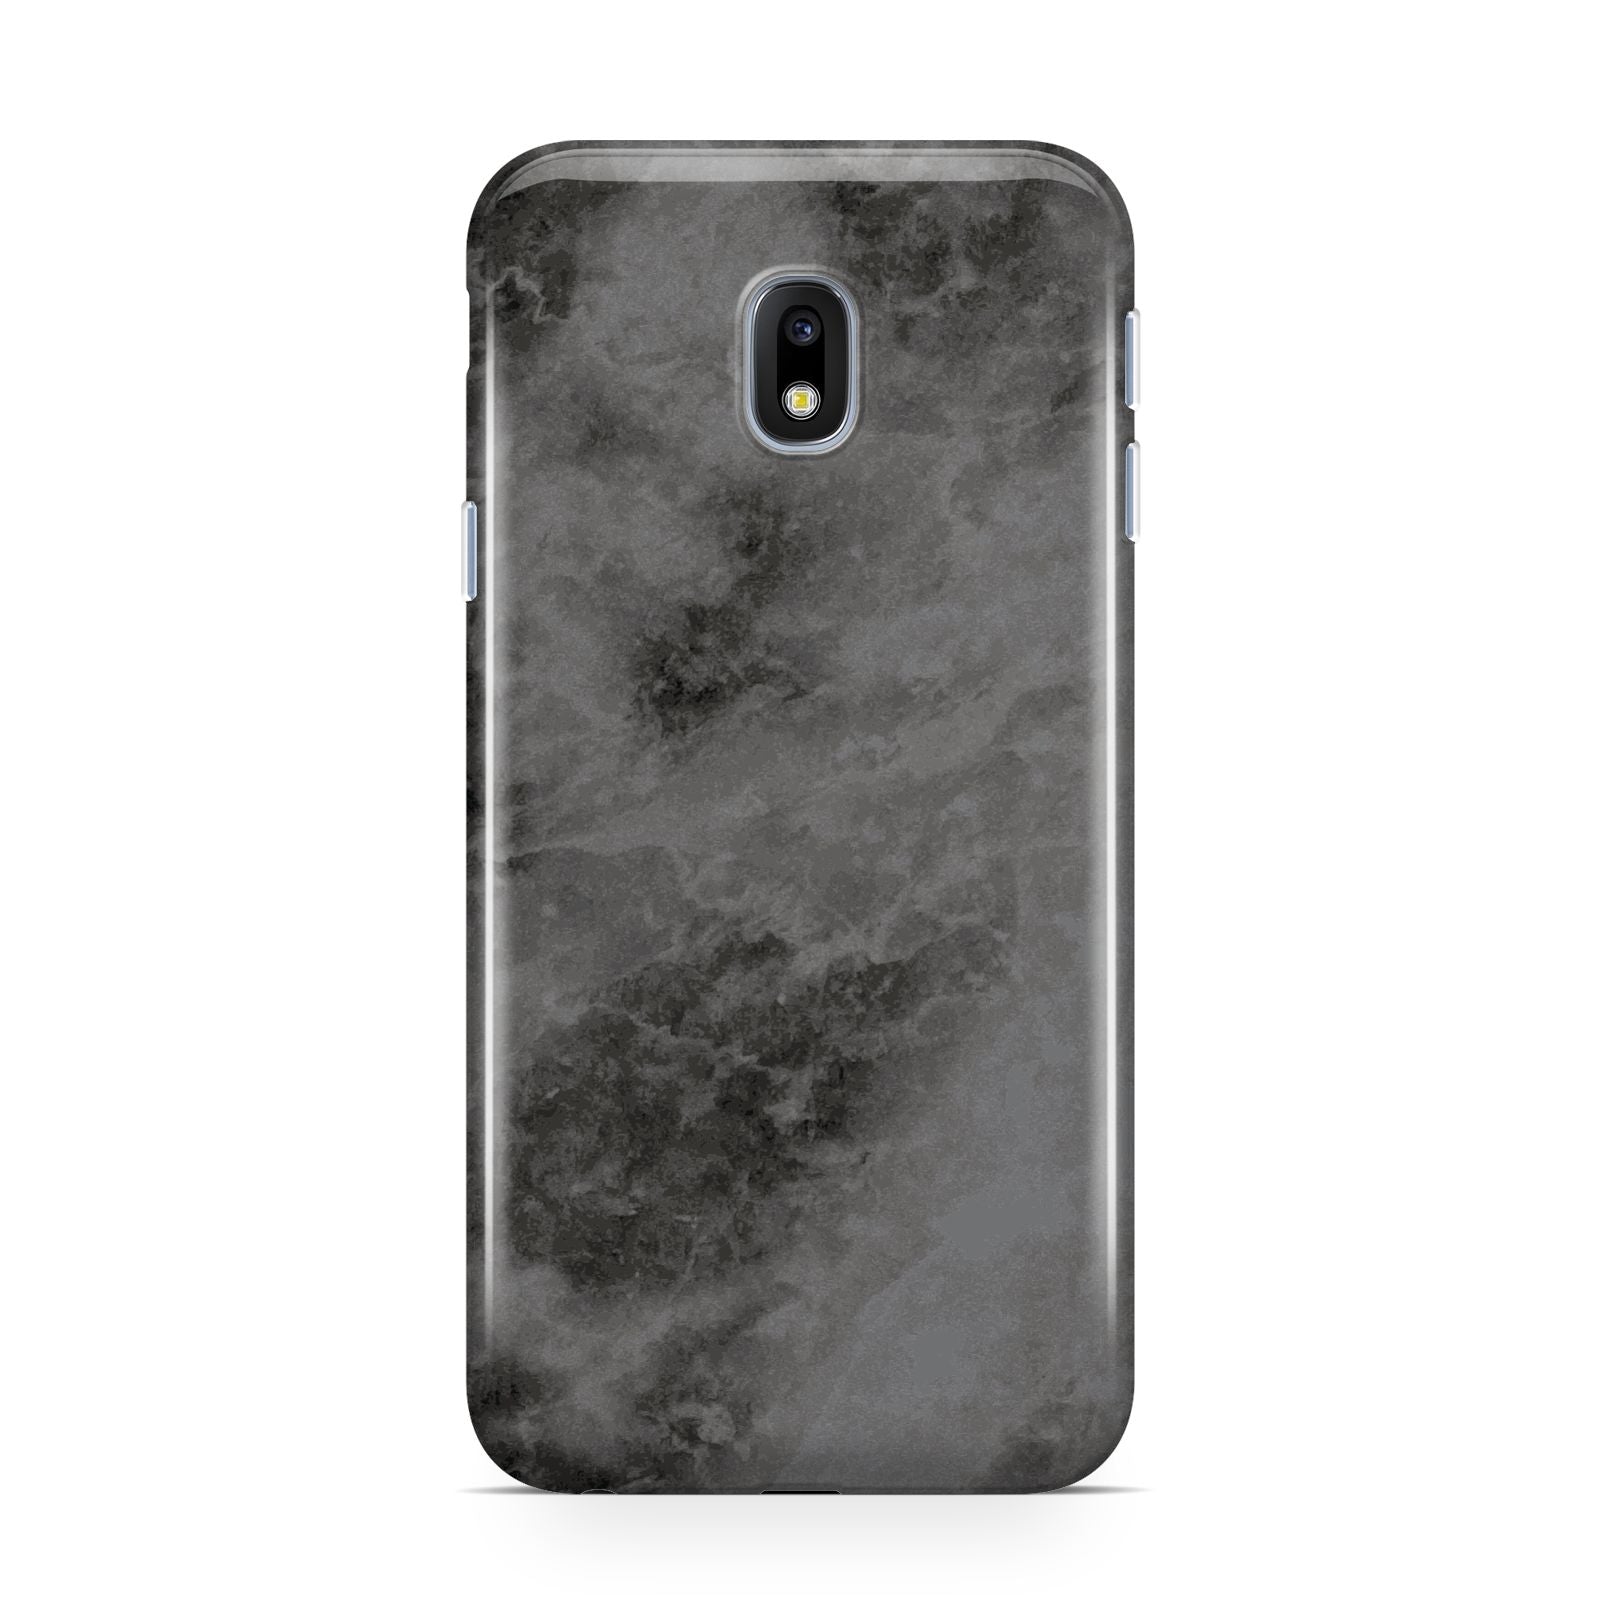 Faux Marble Grey Black Samsung Galaxy J3 2017 Case